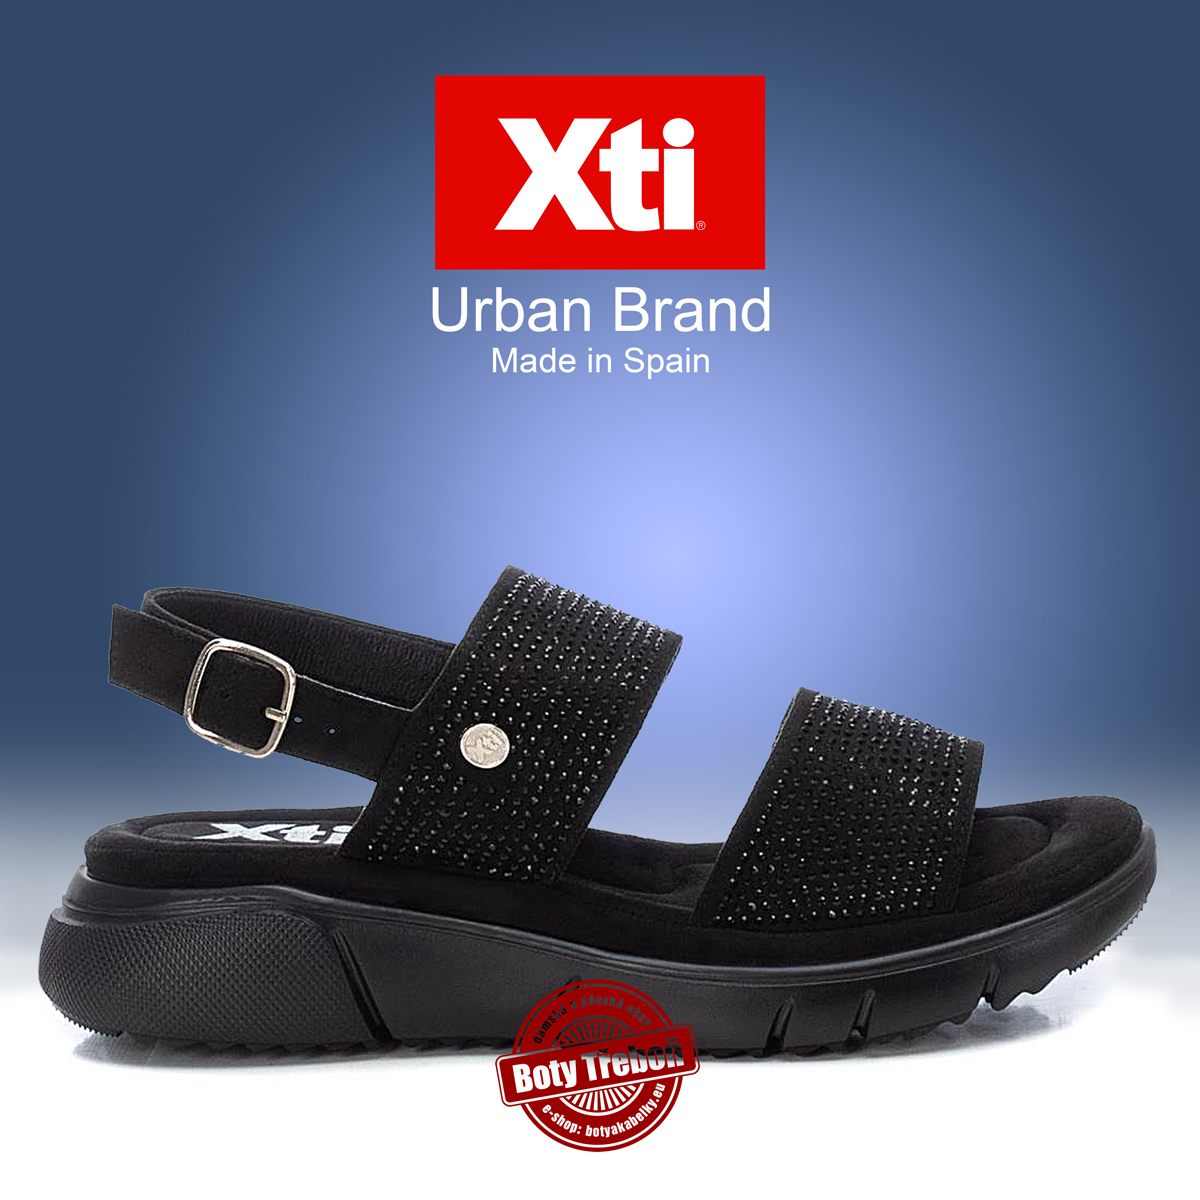 1 XTI - dámské sandály, černé 02